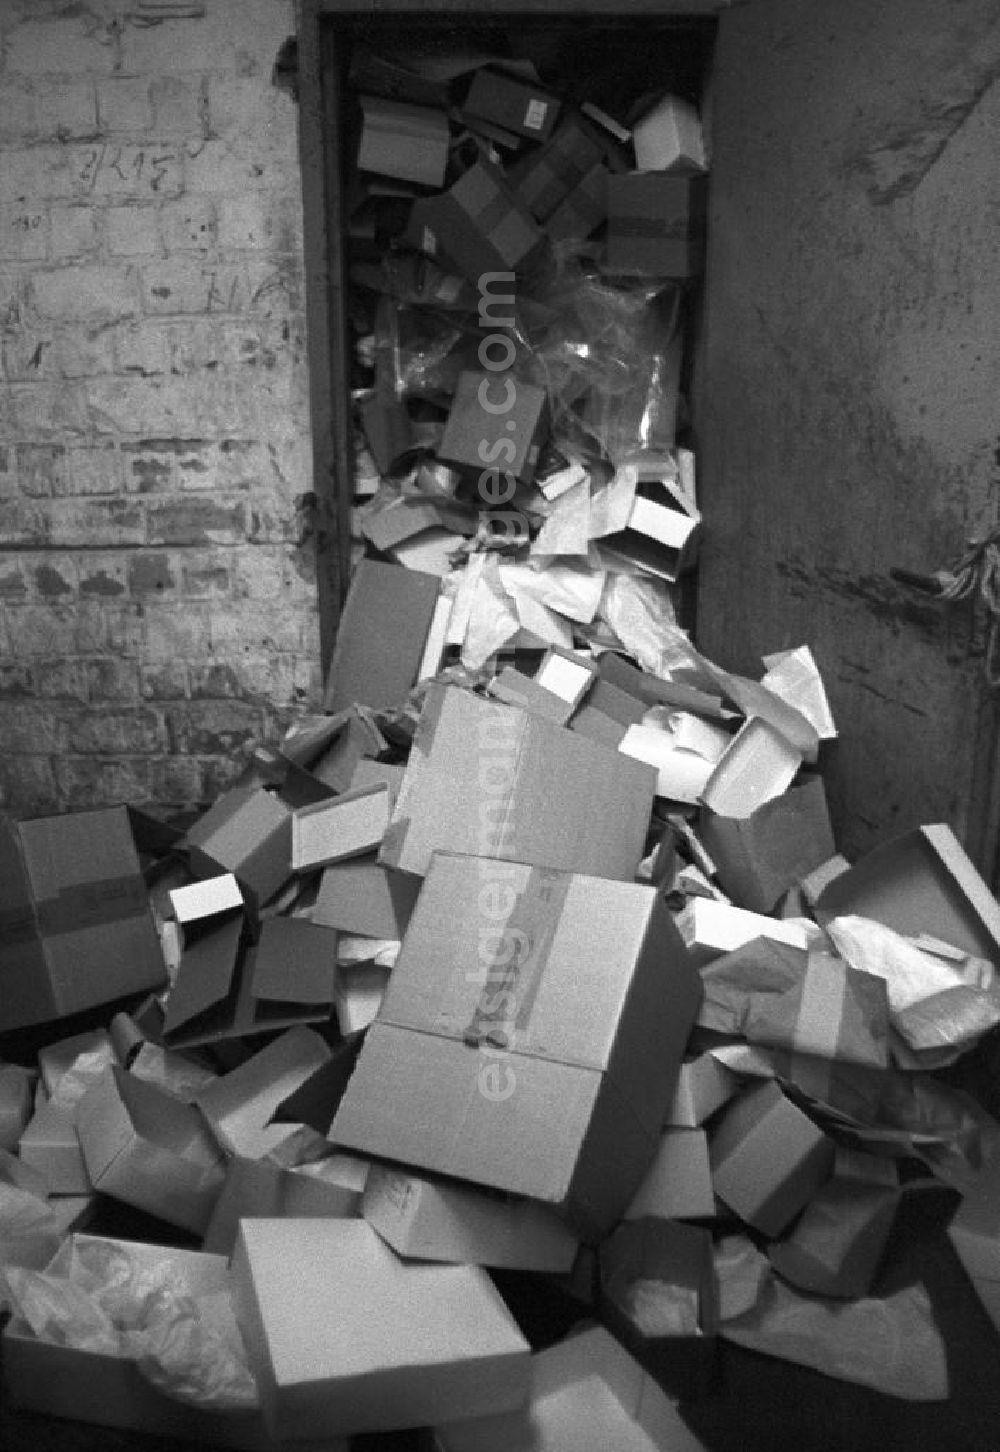 GDR image archive: Berlin - Leere Pappkartons liegen auf einem Haufen in einem Keller in Berlin.